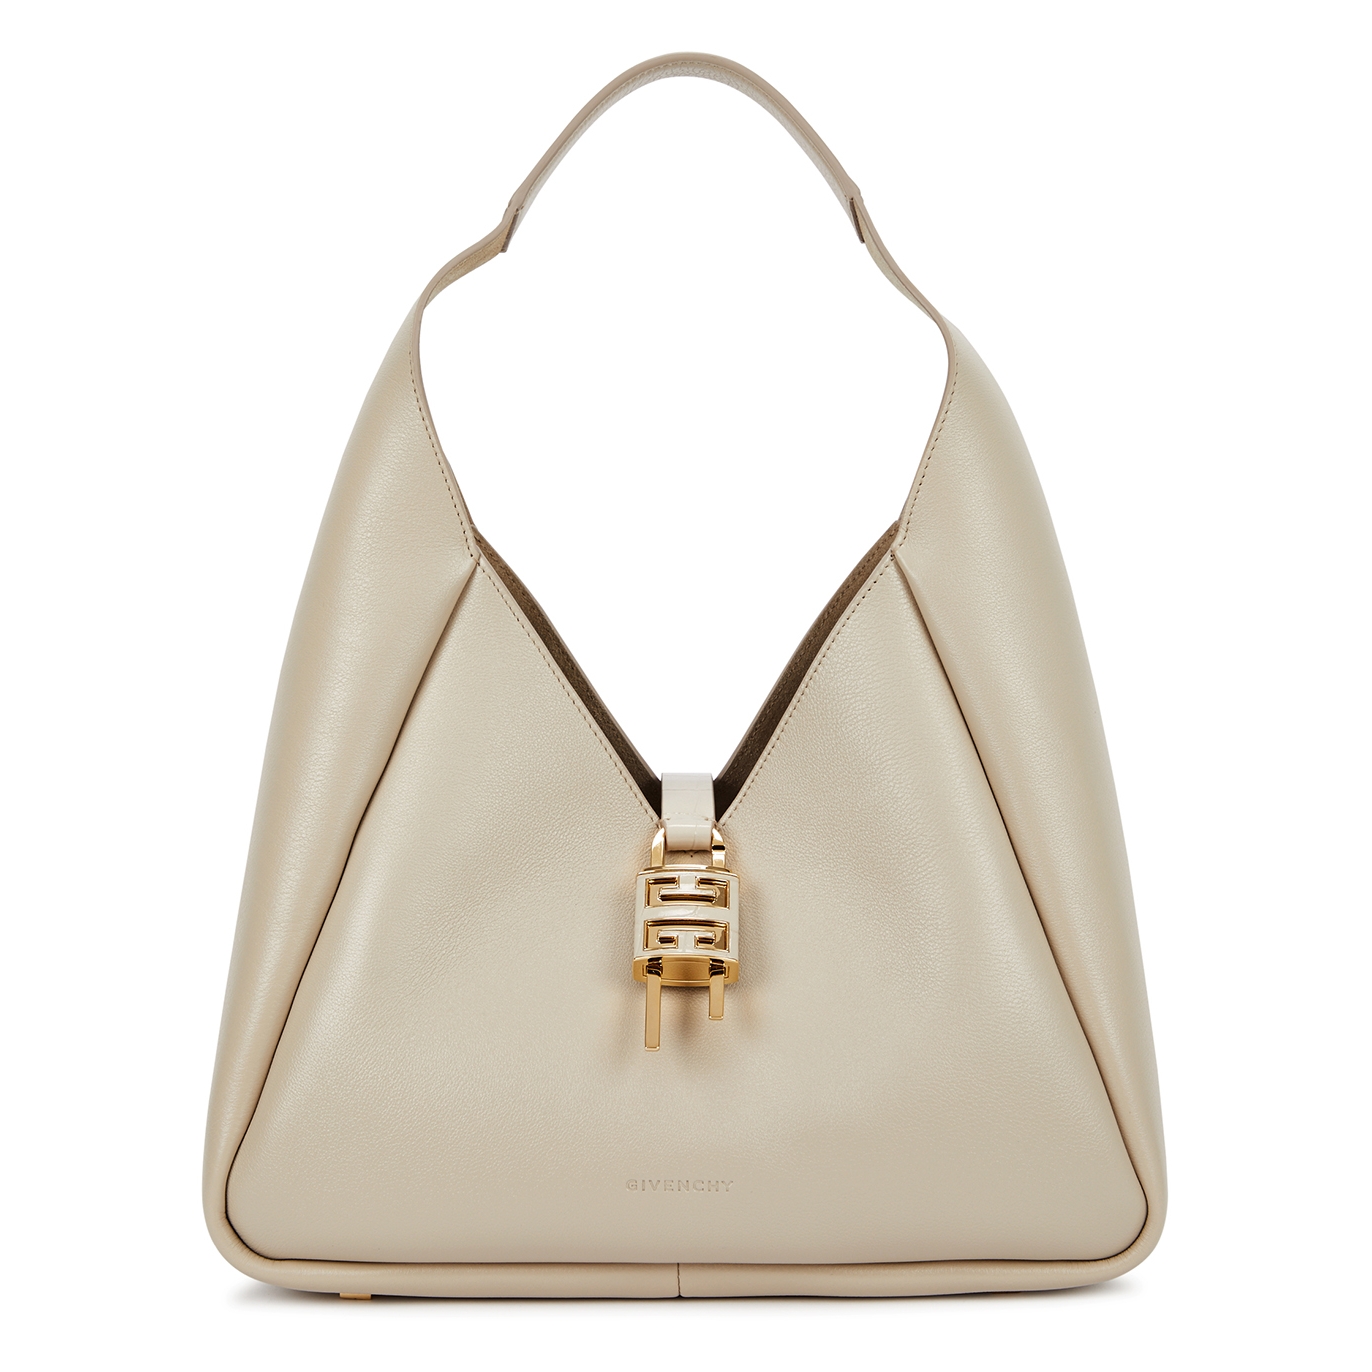 Givenchy G-Hobo Medium Leather Shoulder Bag - Beige